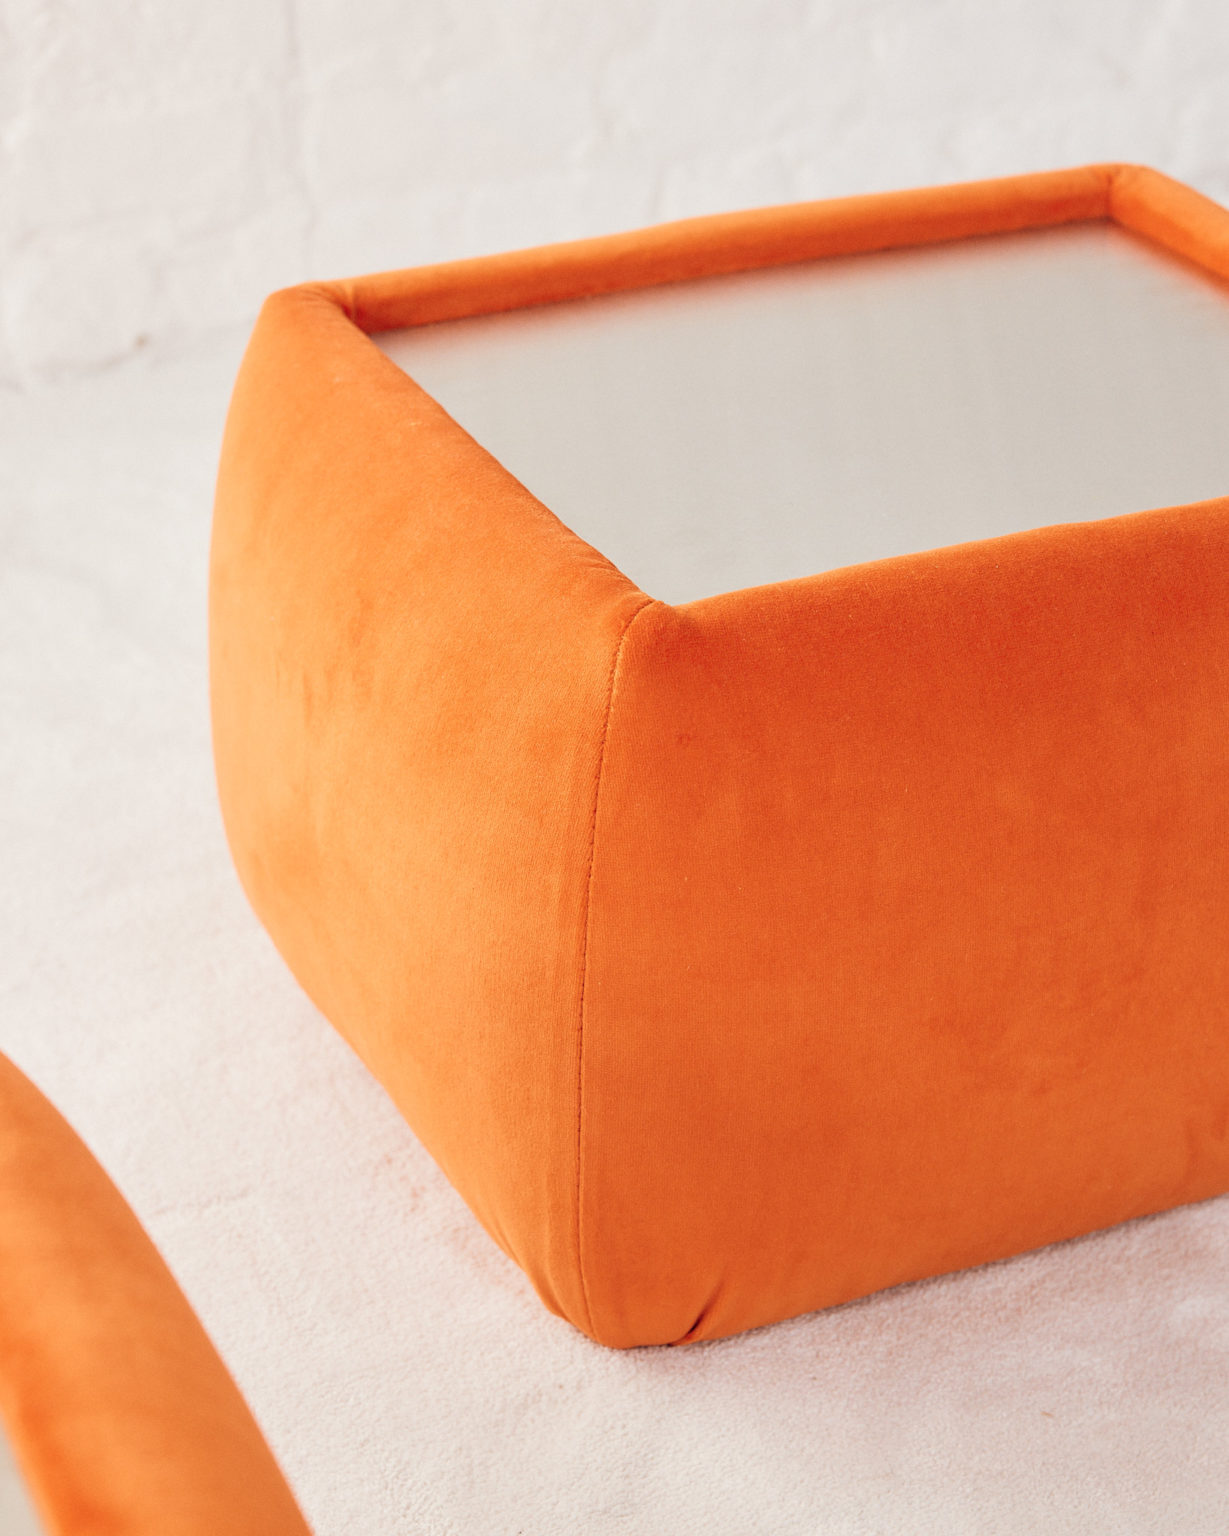 Orange Side table in style of Roche Bobois